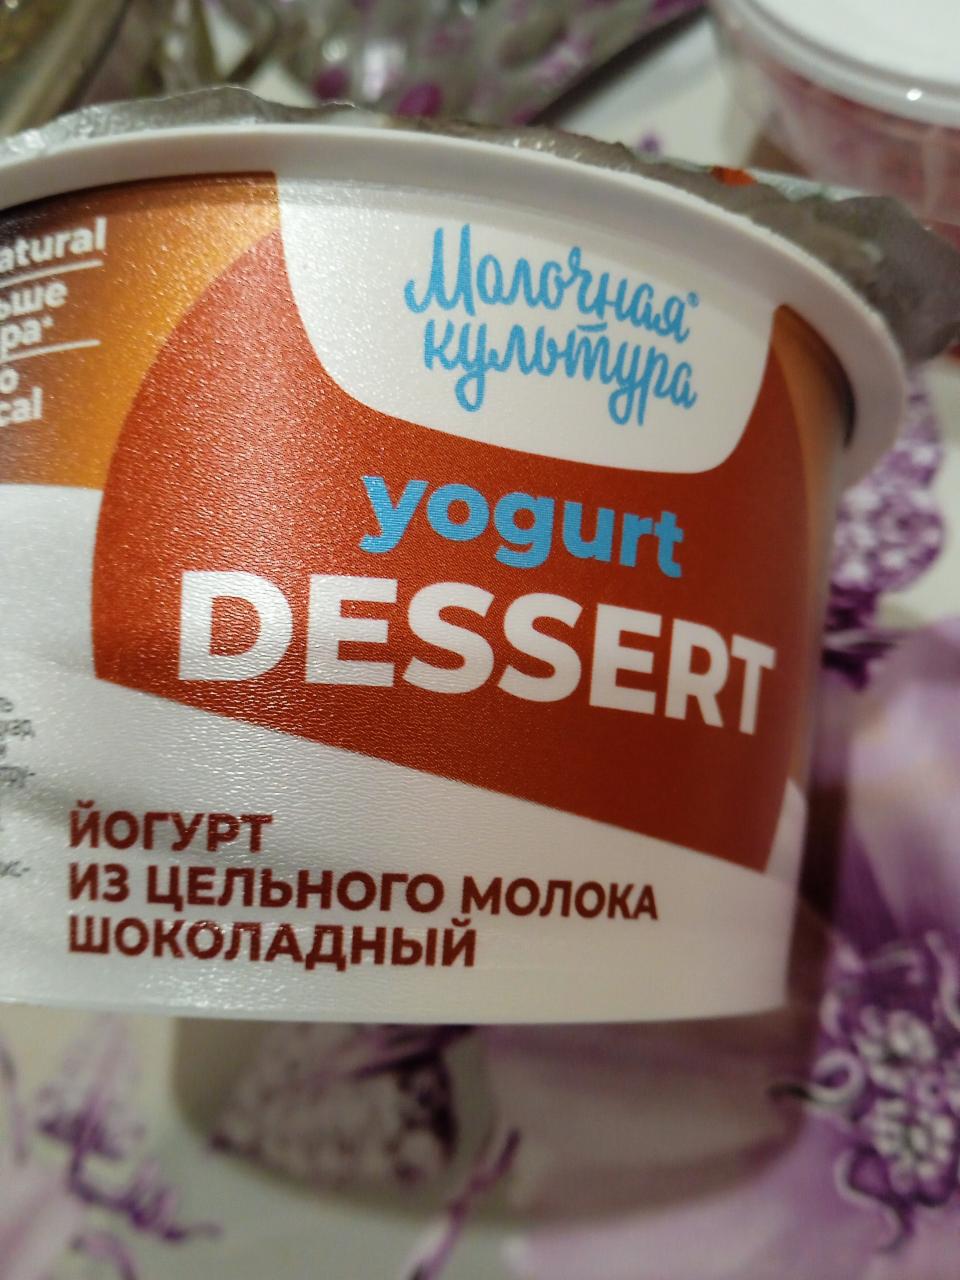 Фото - йогурт из цельного молока Клубничный чизкейк Молочная культура